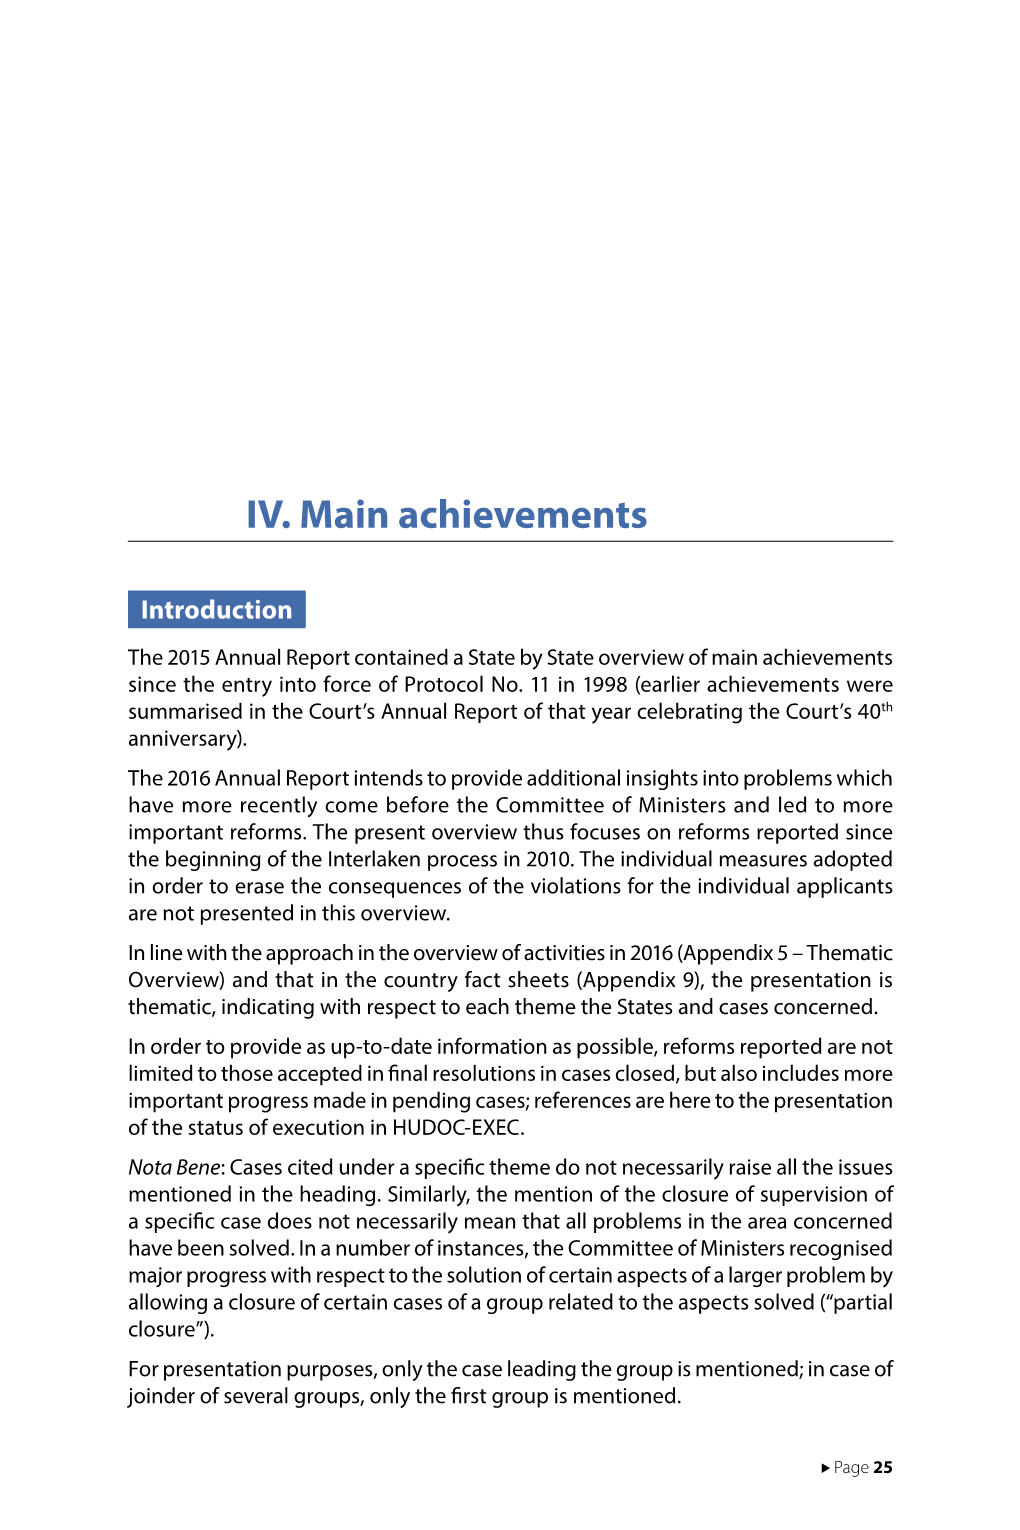 IV. Main Achievements